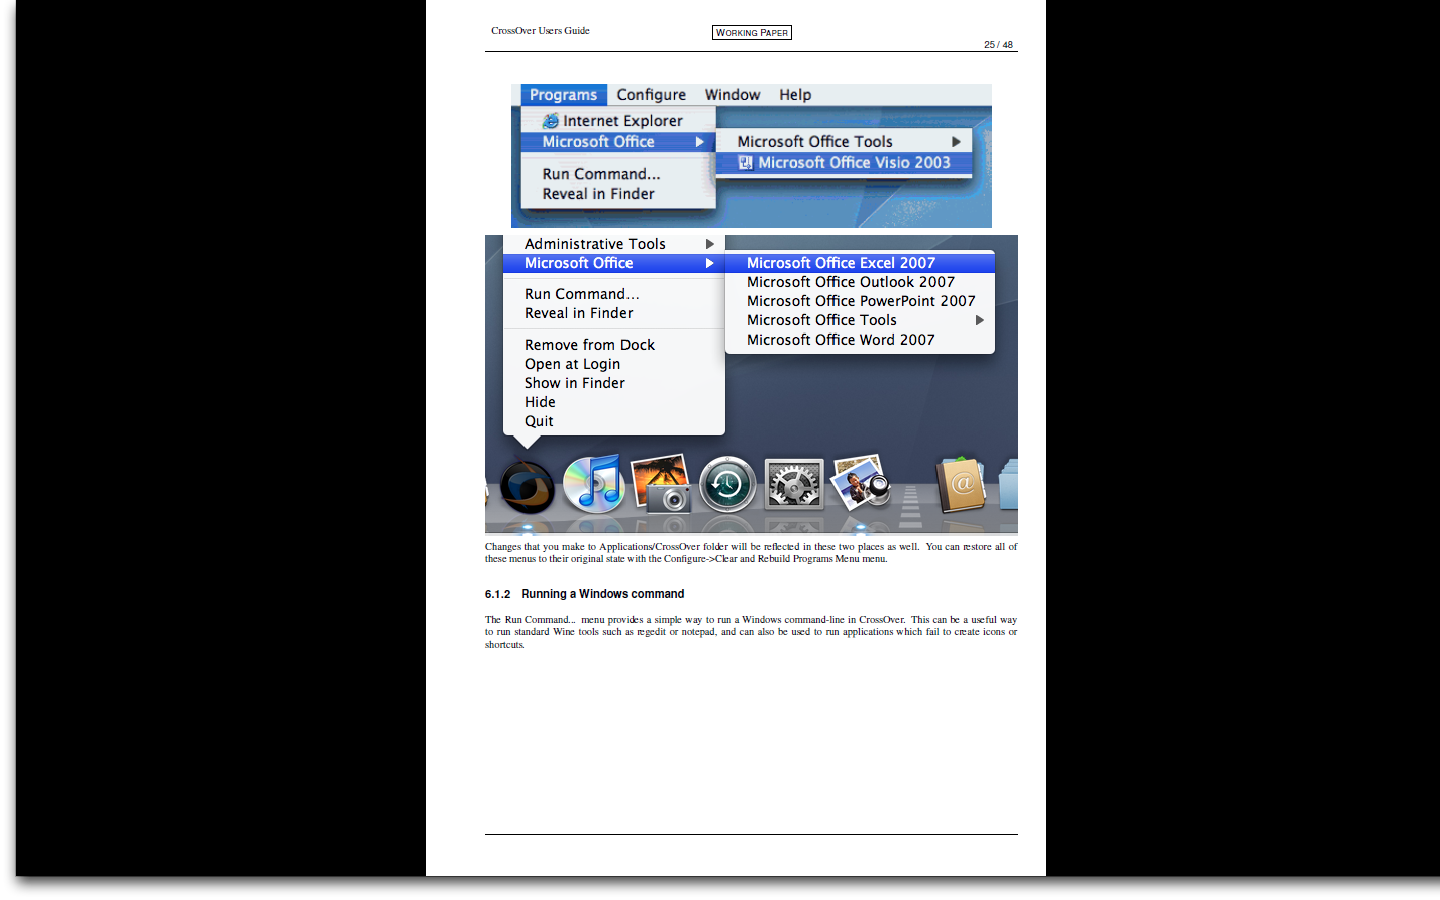 acrobat 9 free download full version windows 7